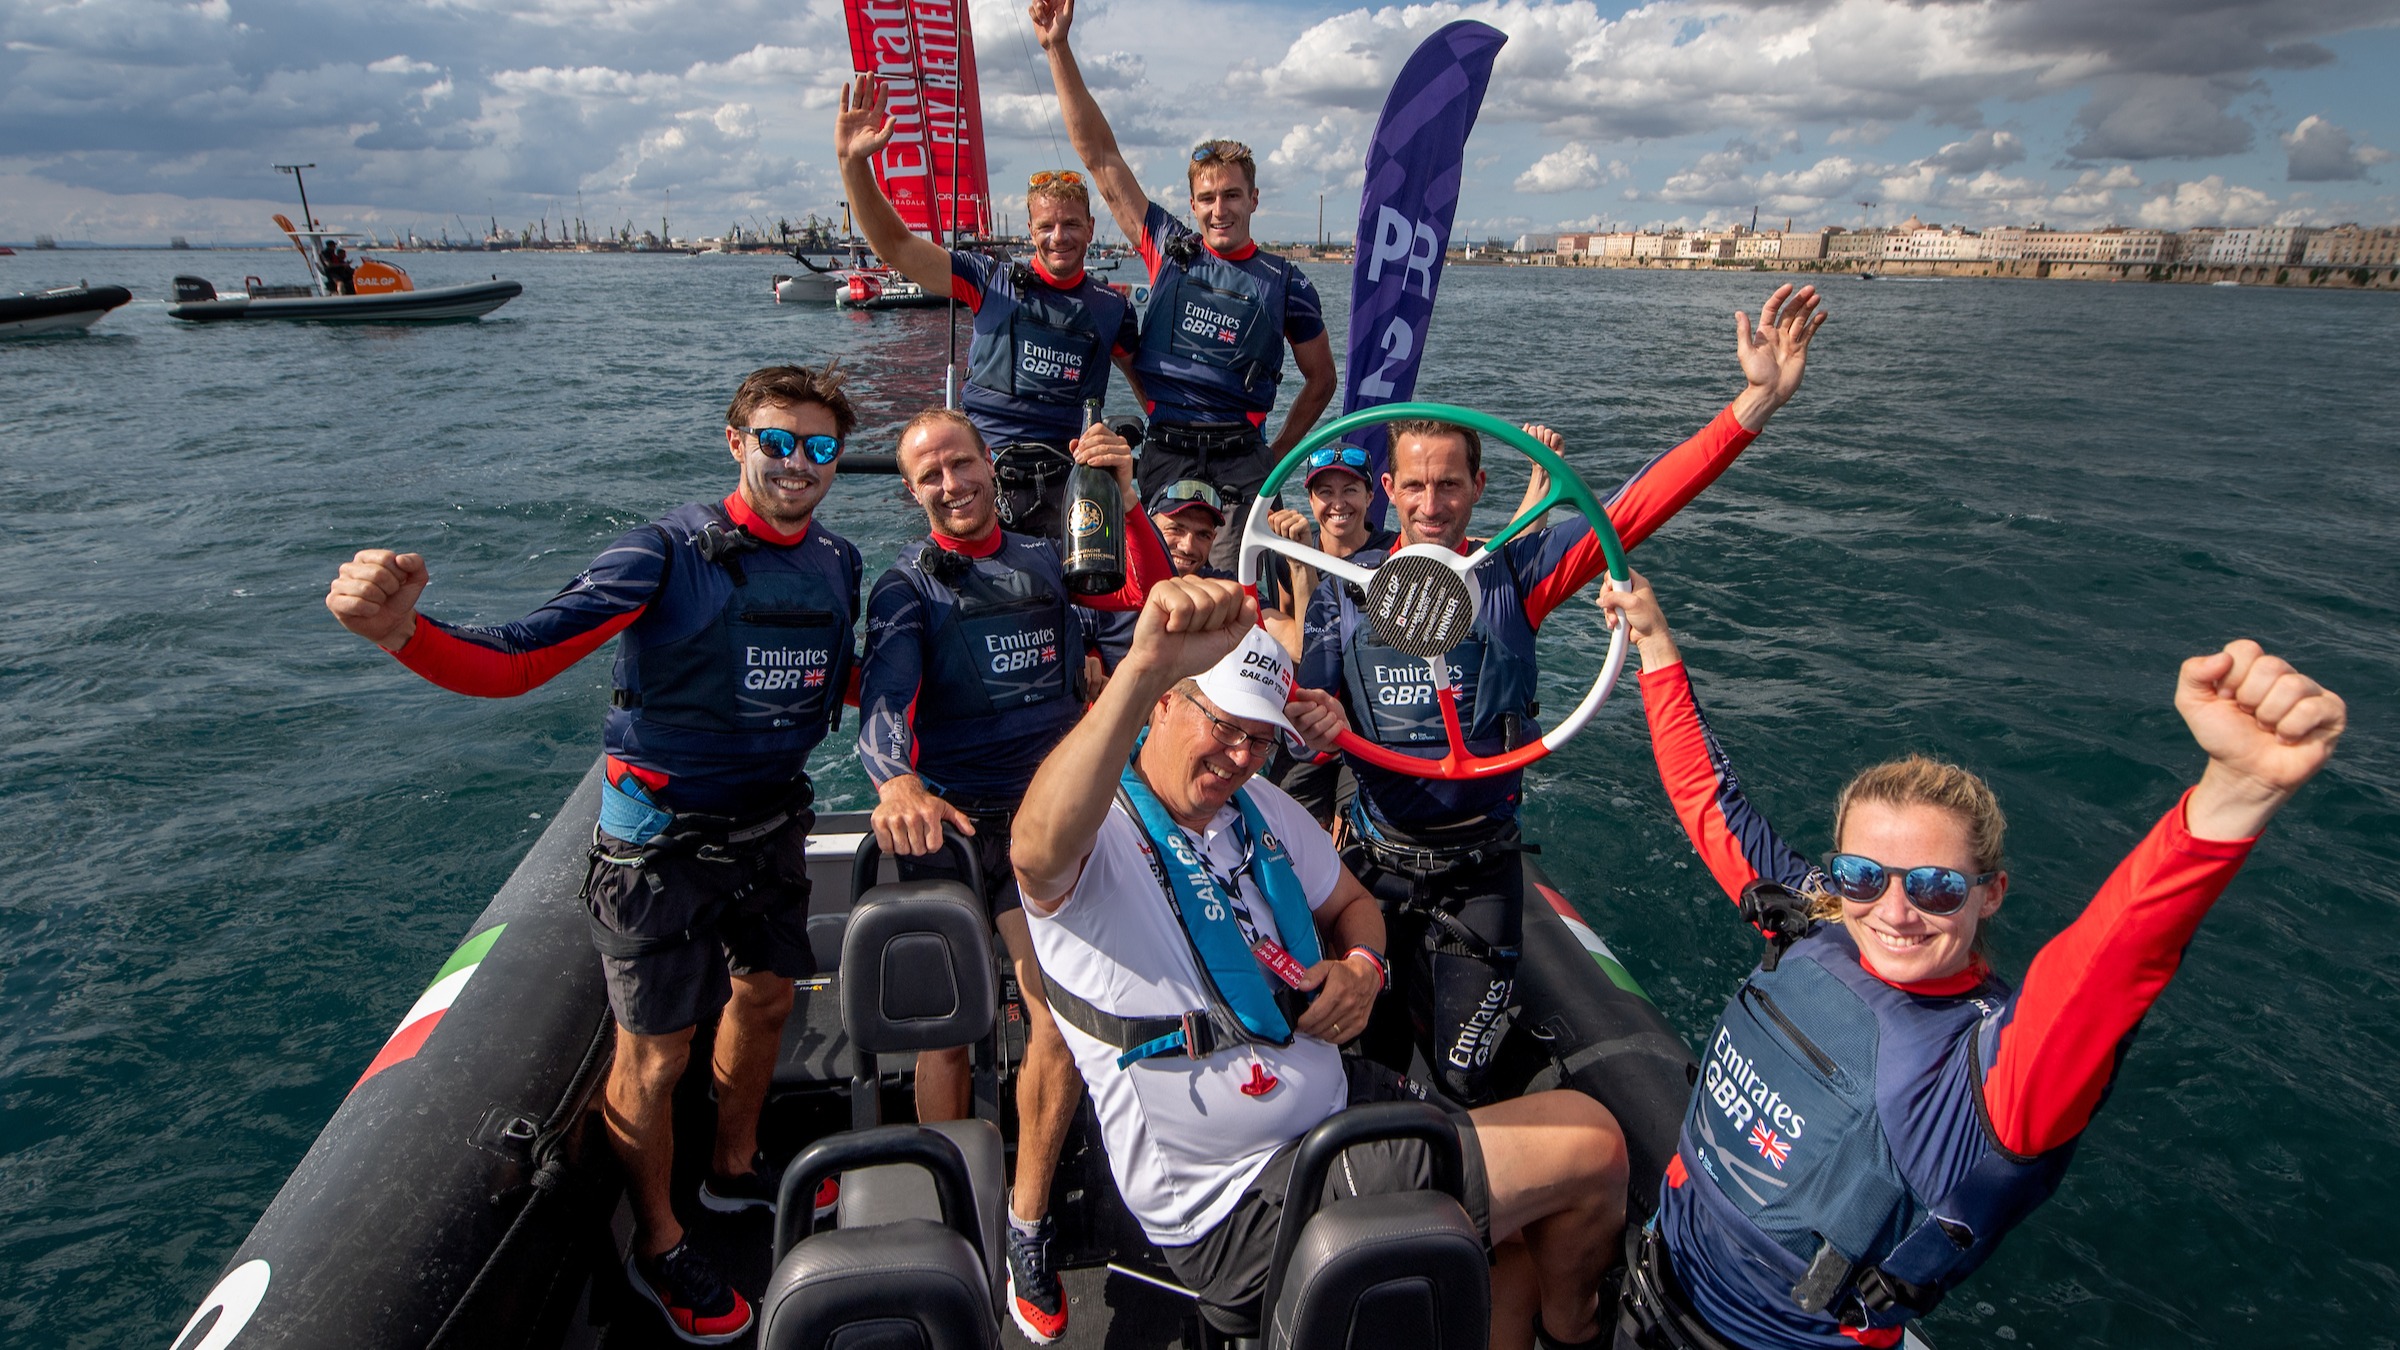 Temporada 4 // Emirates GBR celebra la victoria en Taranto desde el barco de persecución del equipo 